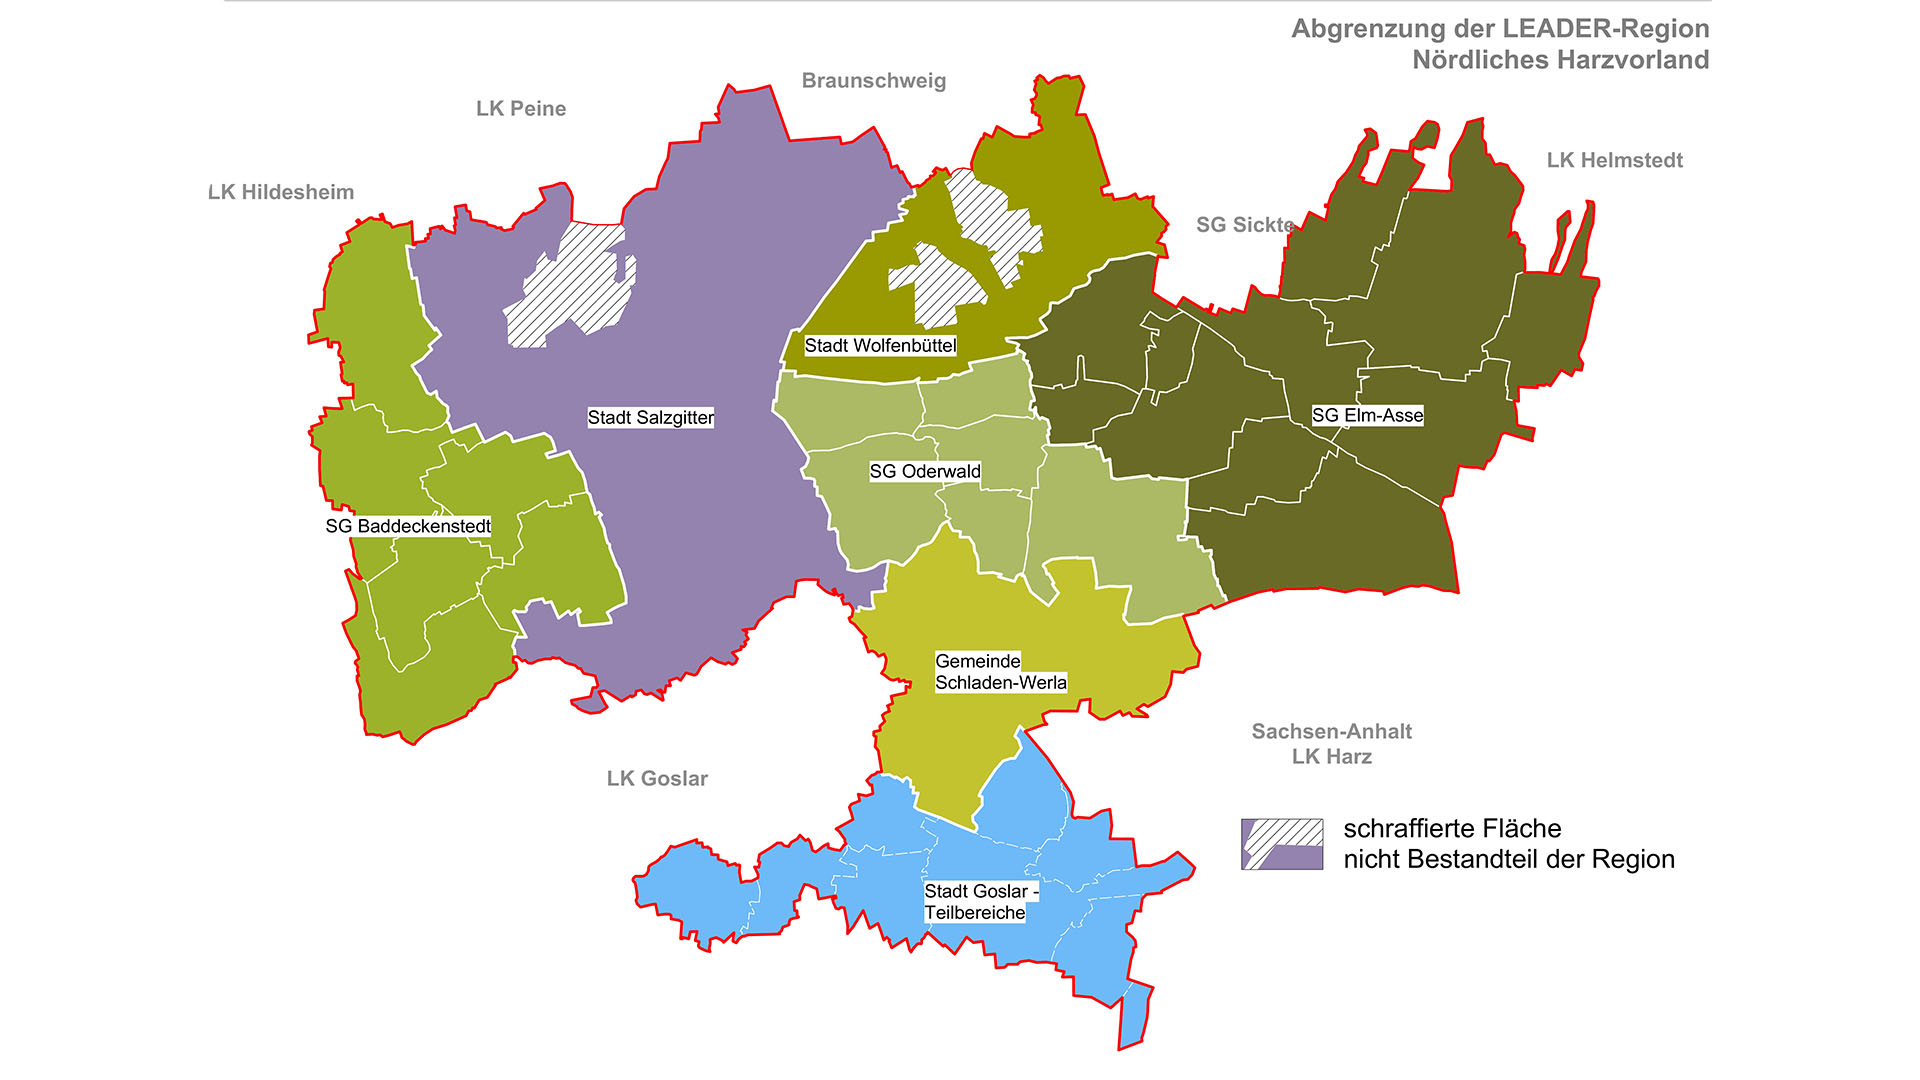 Abrenzung der LEADER-Region Nördliches Harzvorland in einer Landkarte der Region